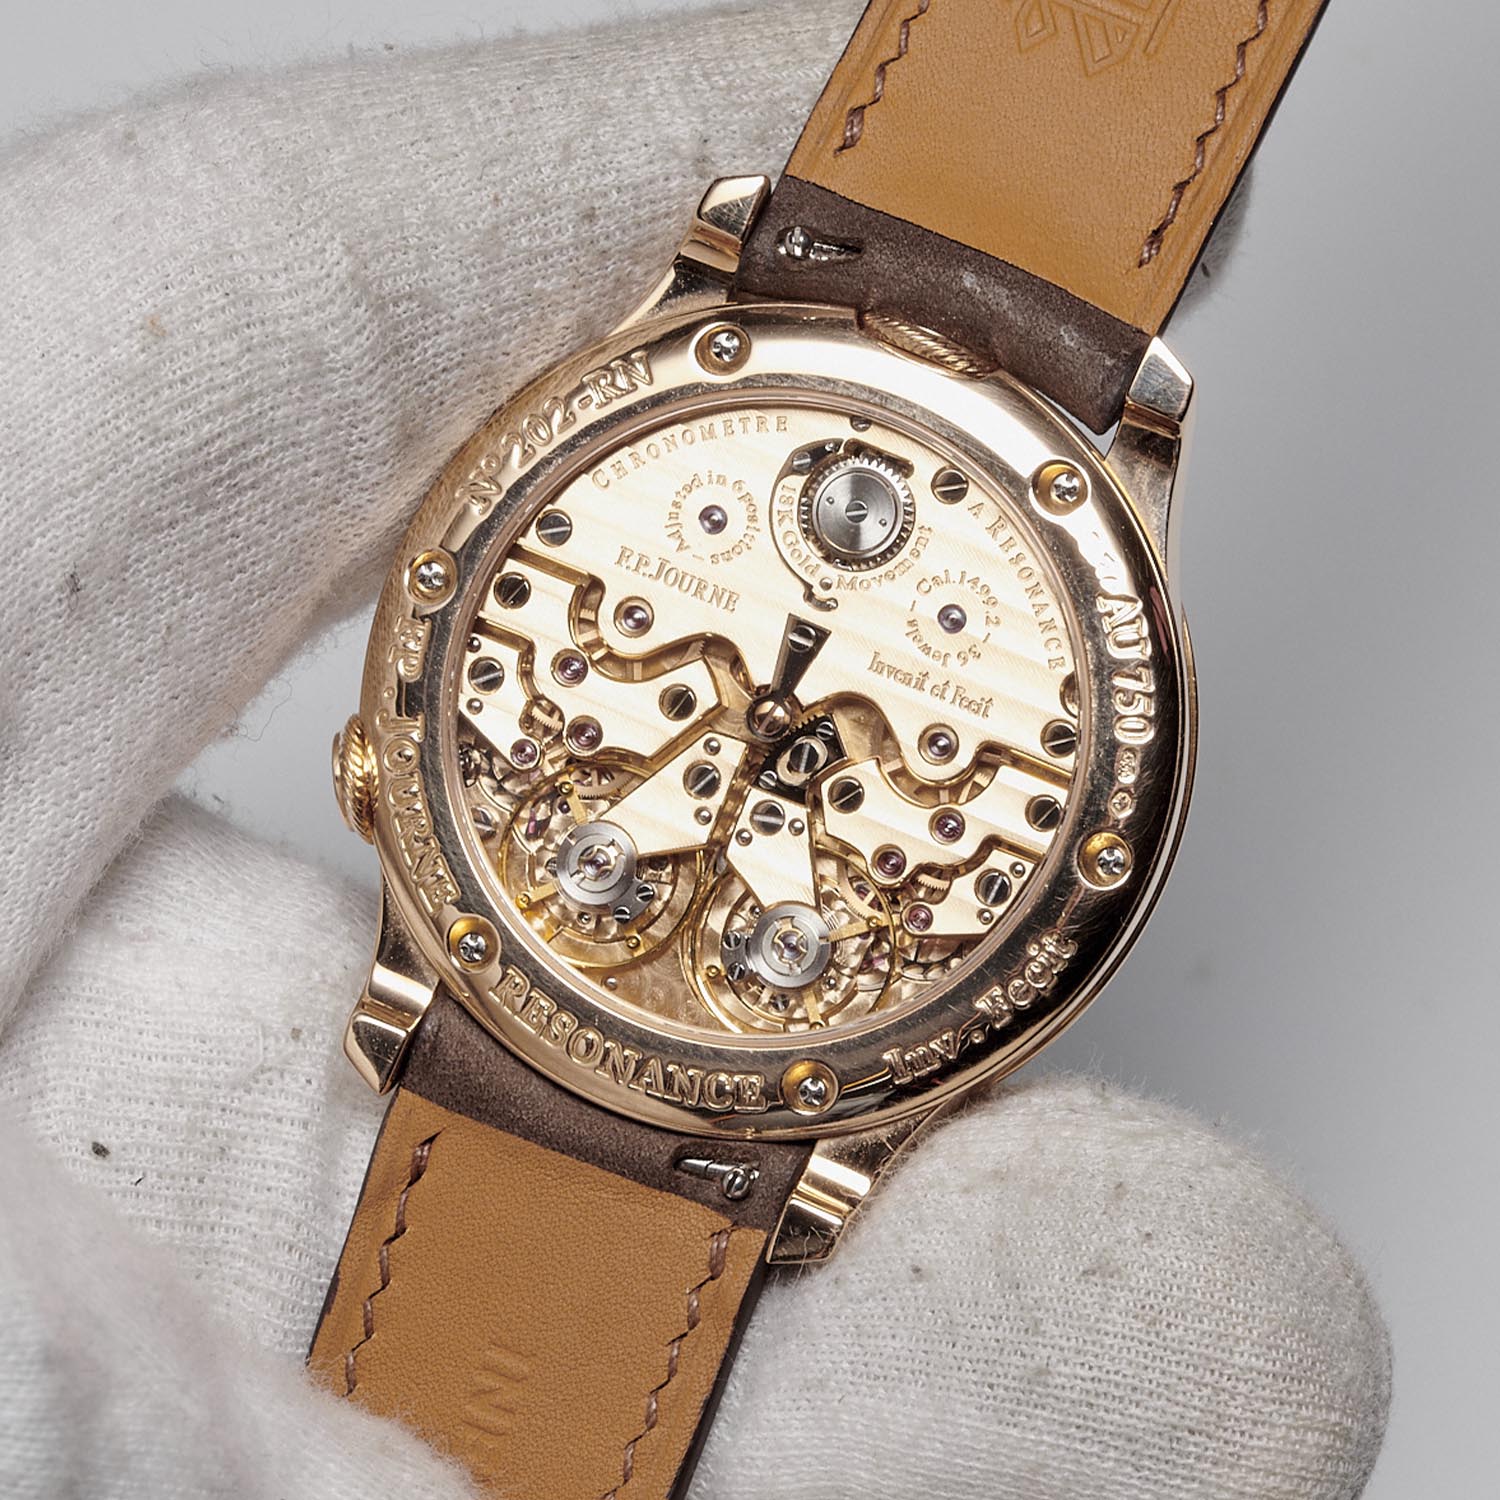 ineichen auction zurich la vie en rose - FP journe Chronometre resonance sincere watches